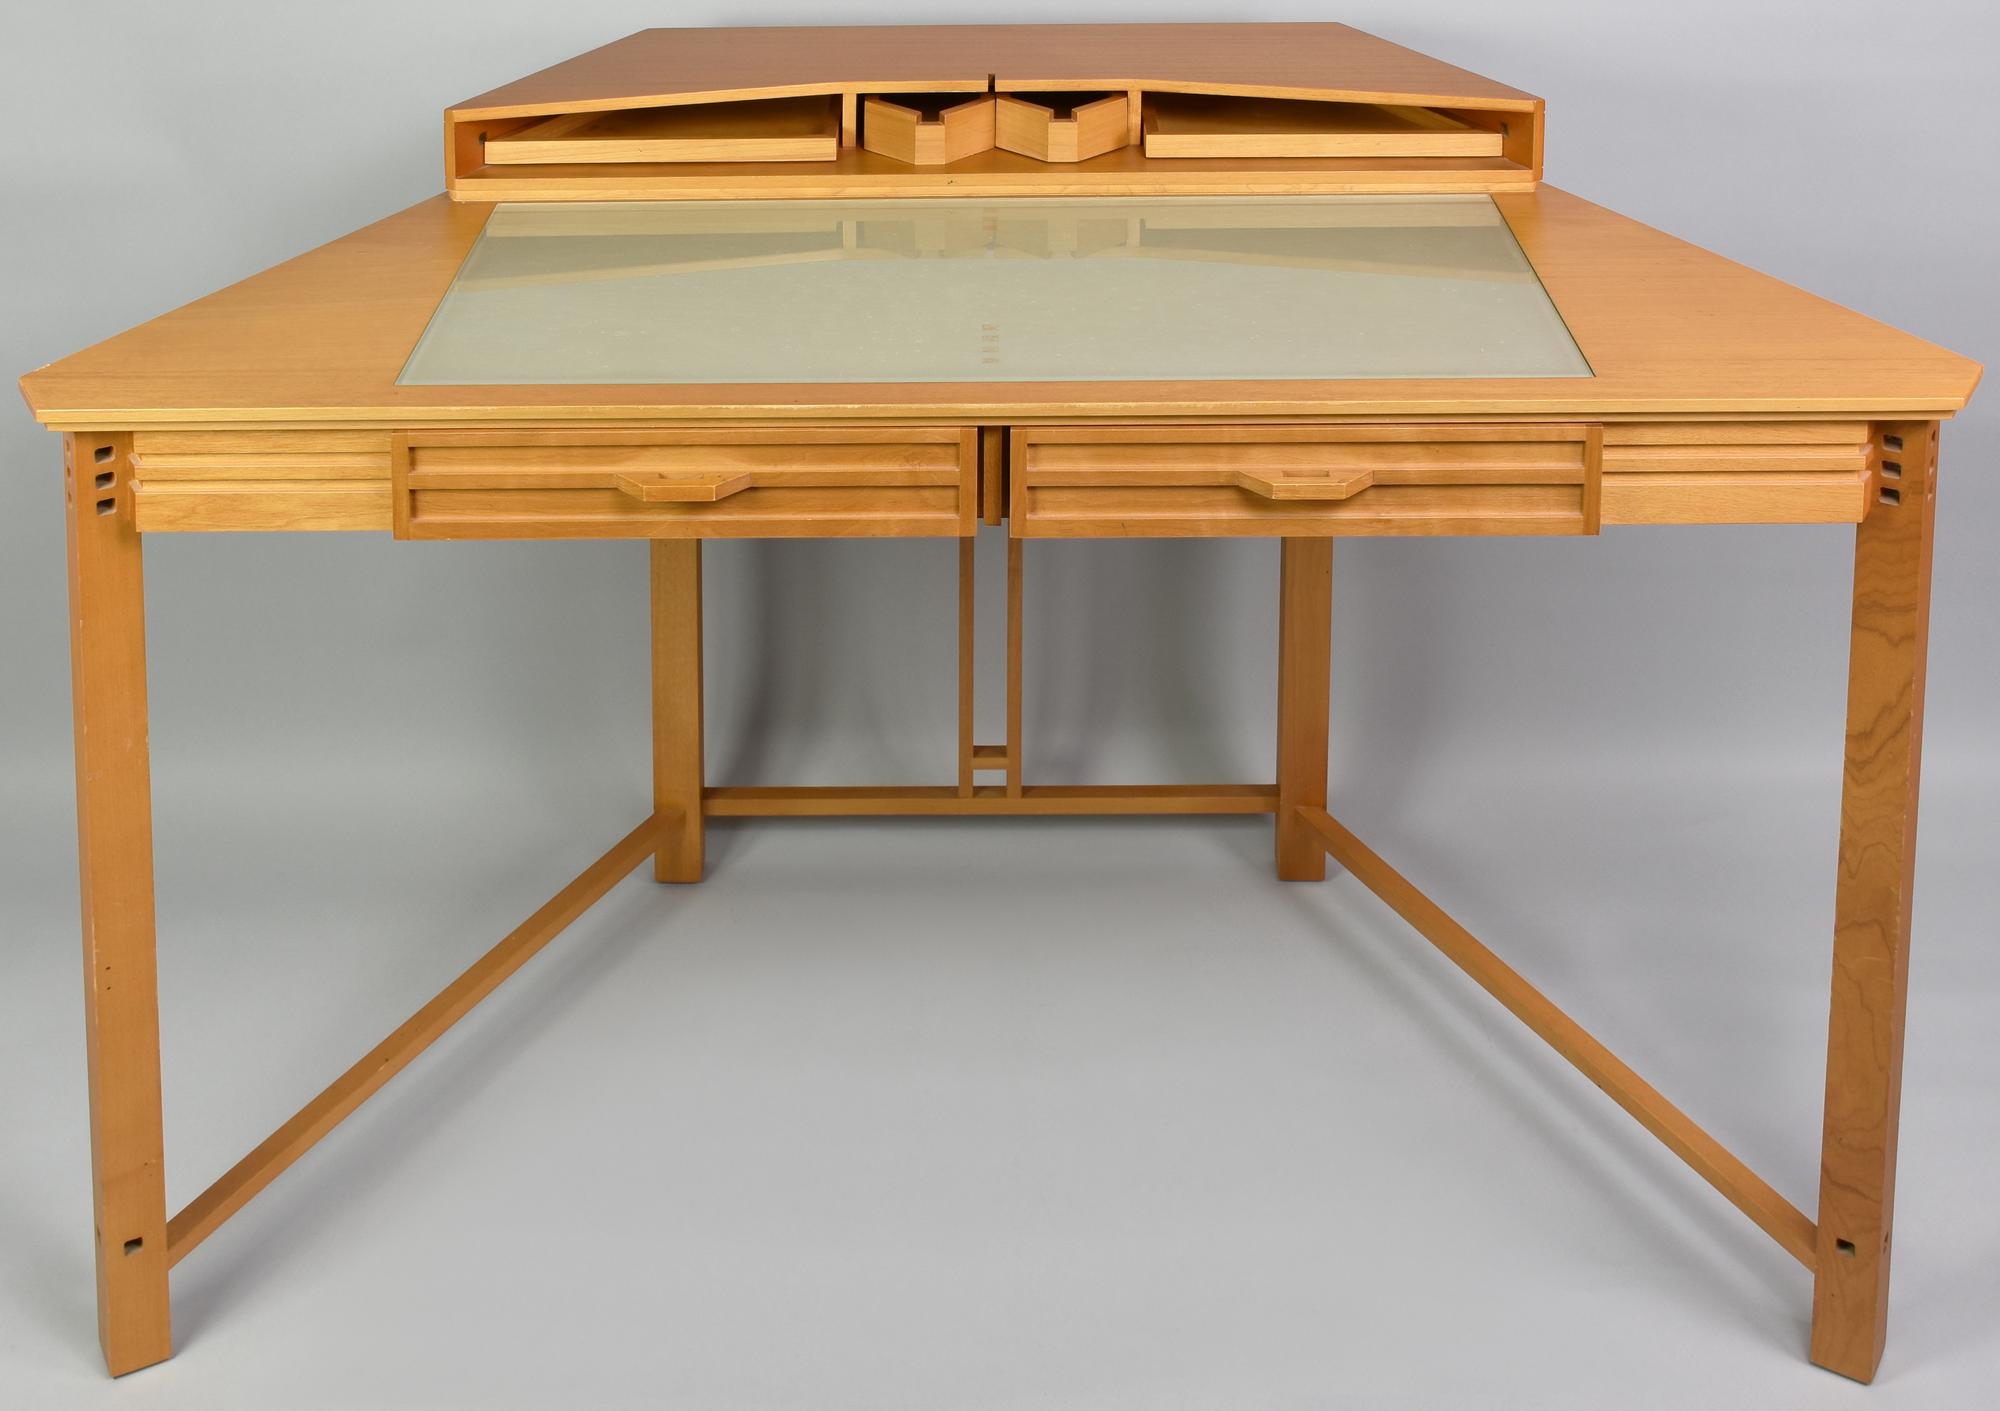 Umberto Asnago SCRIVANIA GALAXY PER GIORGETTI, 1980 scrivania in legno di...